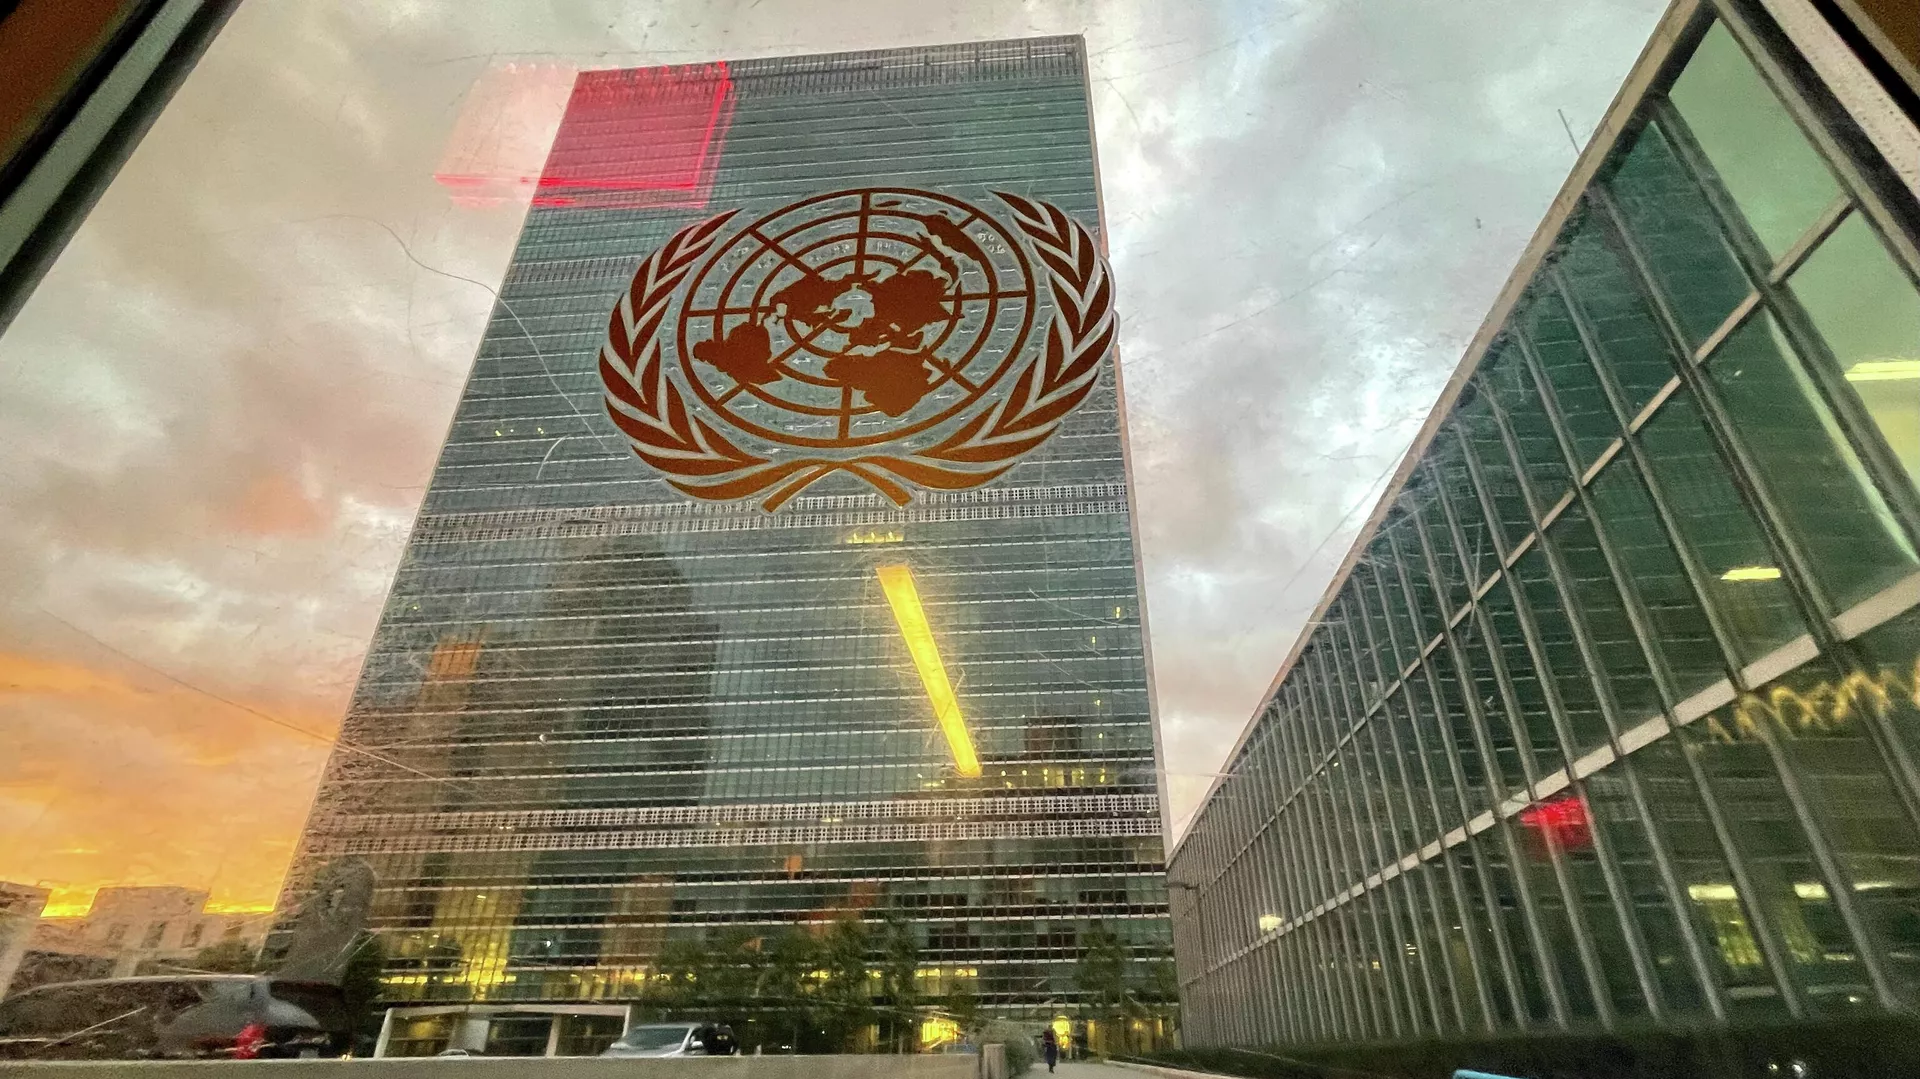 Германия запугивала страны-члены ООН, заявил Вучич